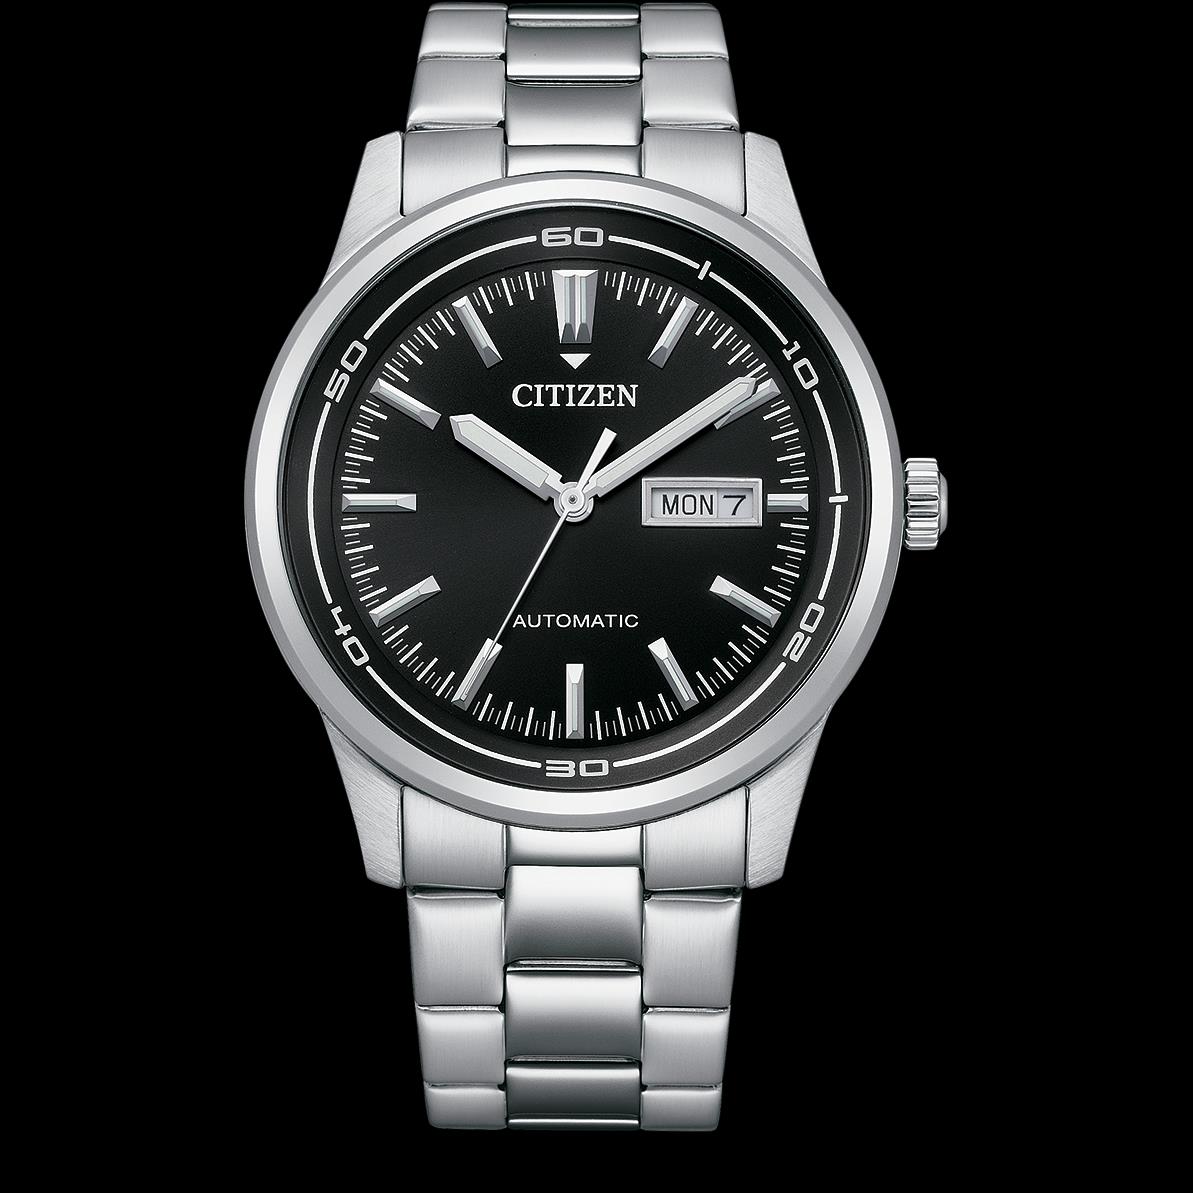 Citizen Herren Automatic Uhr - 166430